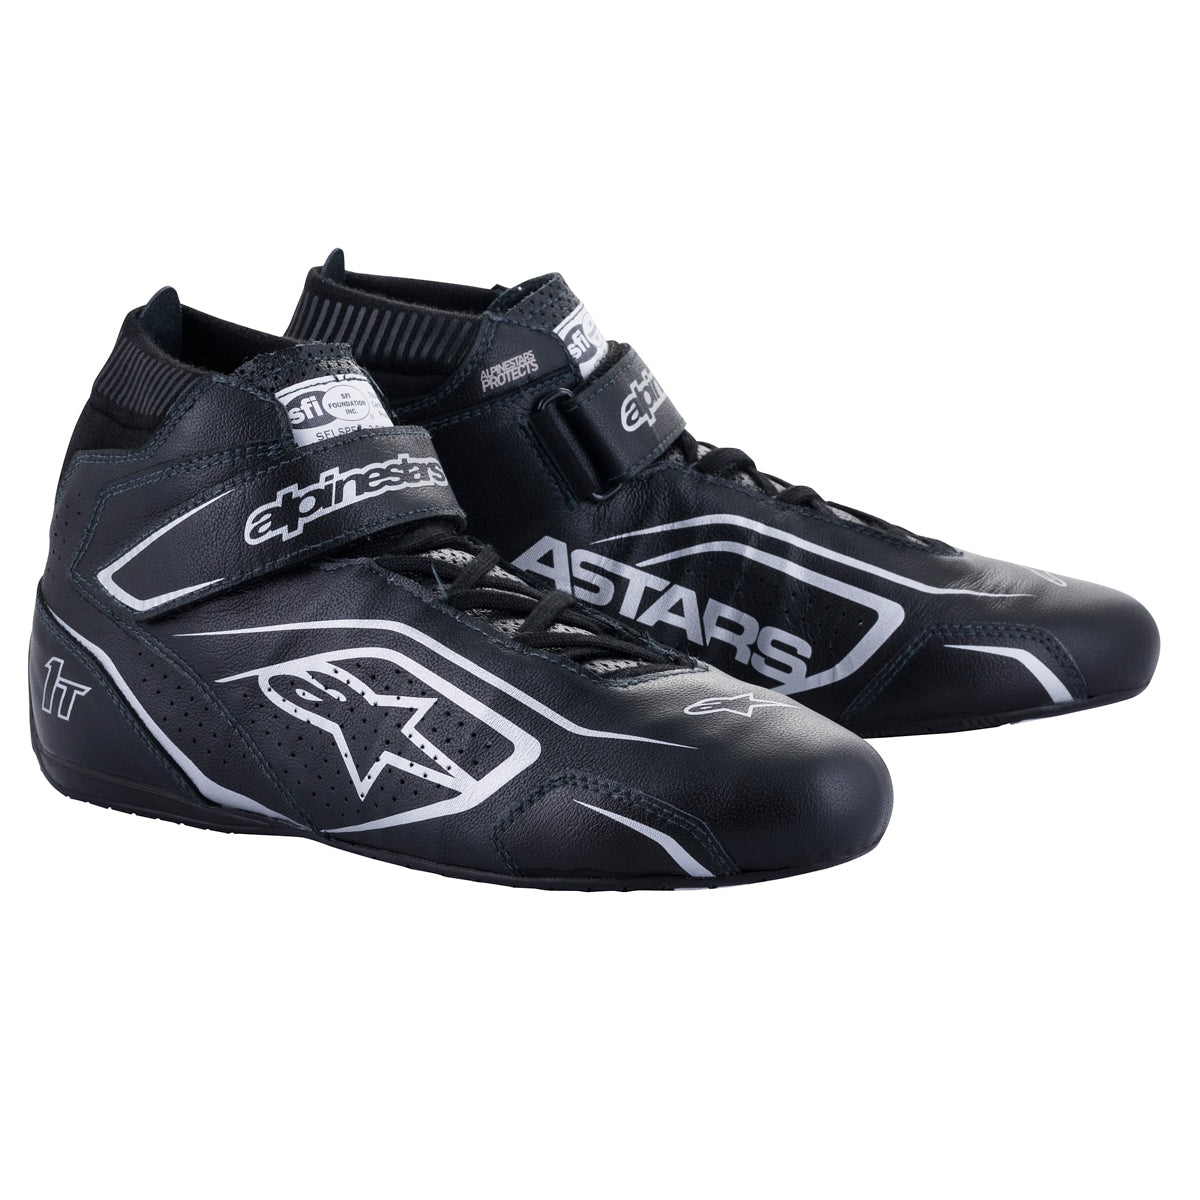 Shoe Tech-1T V3 Black / Silver Size 12